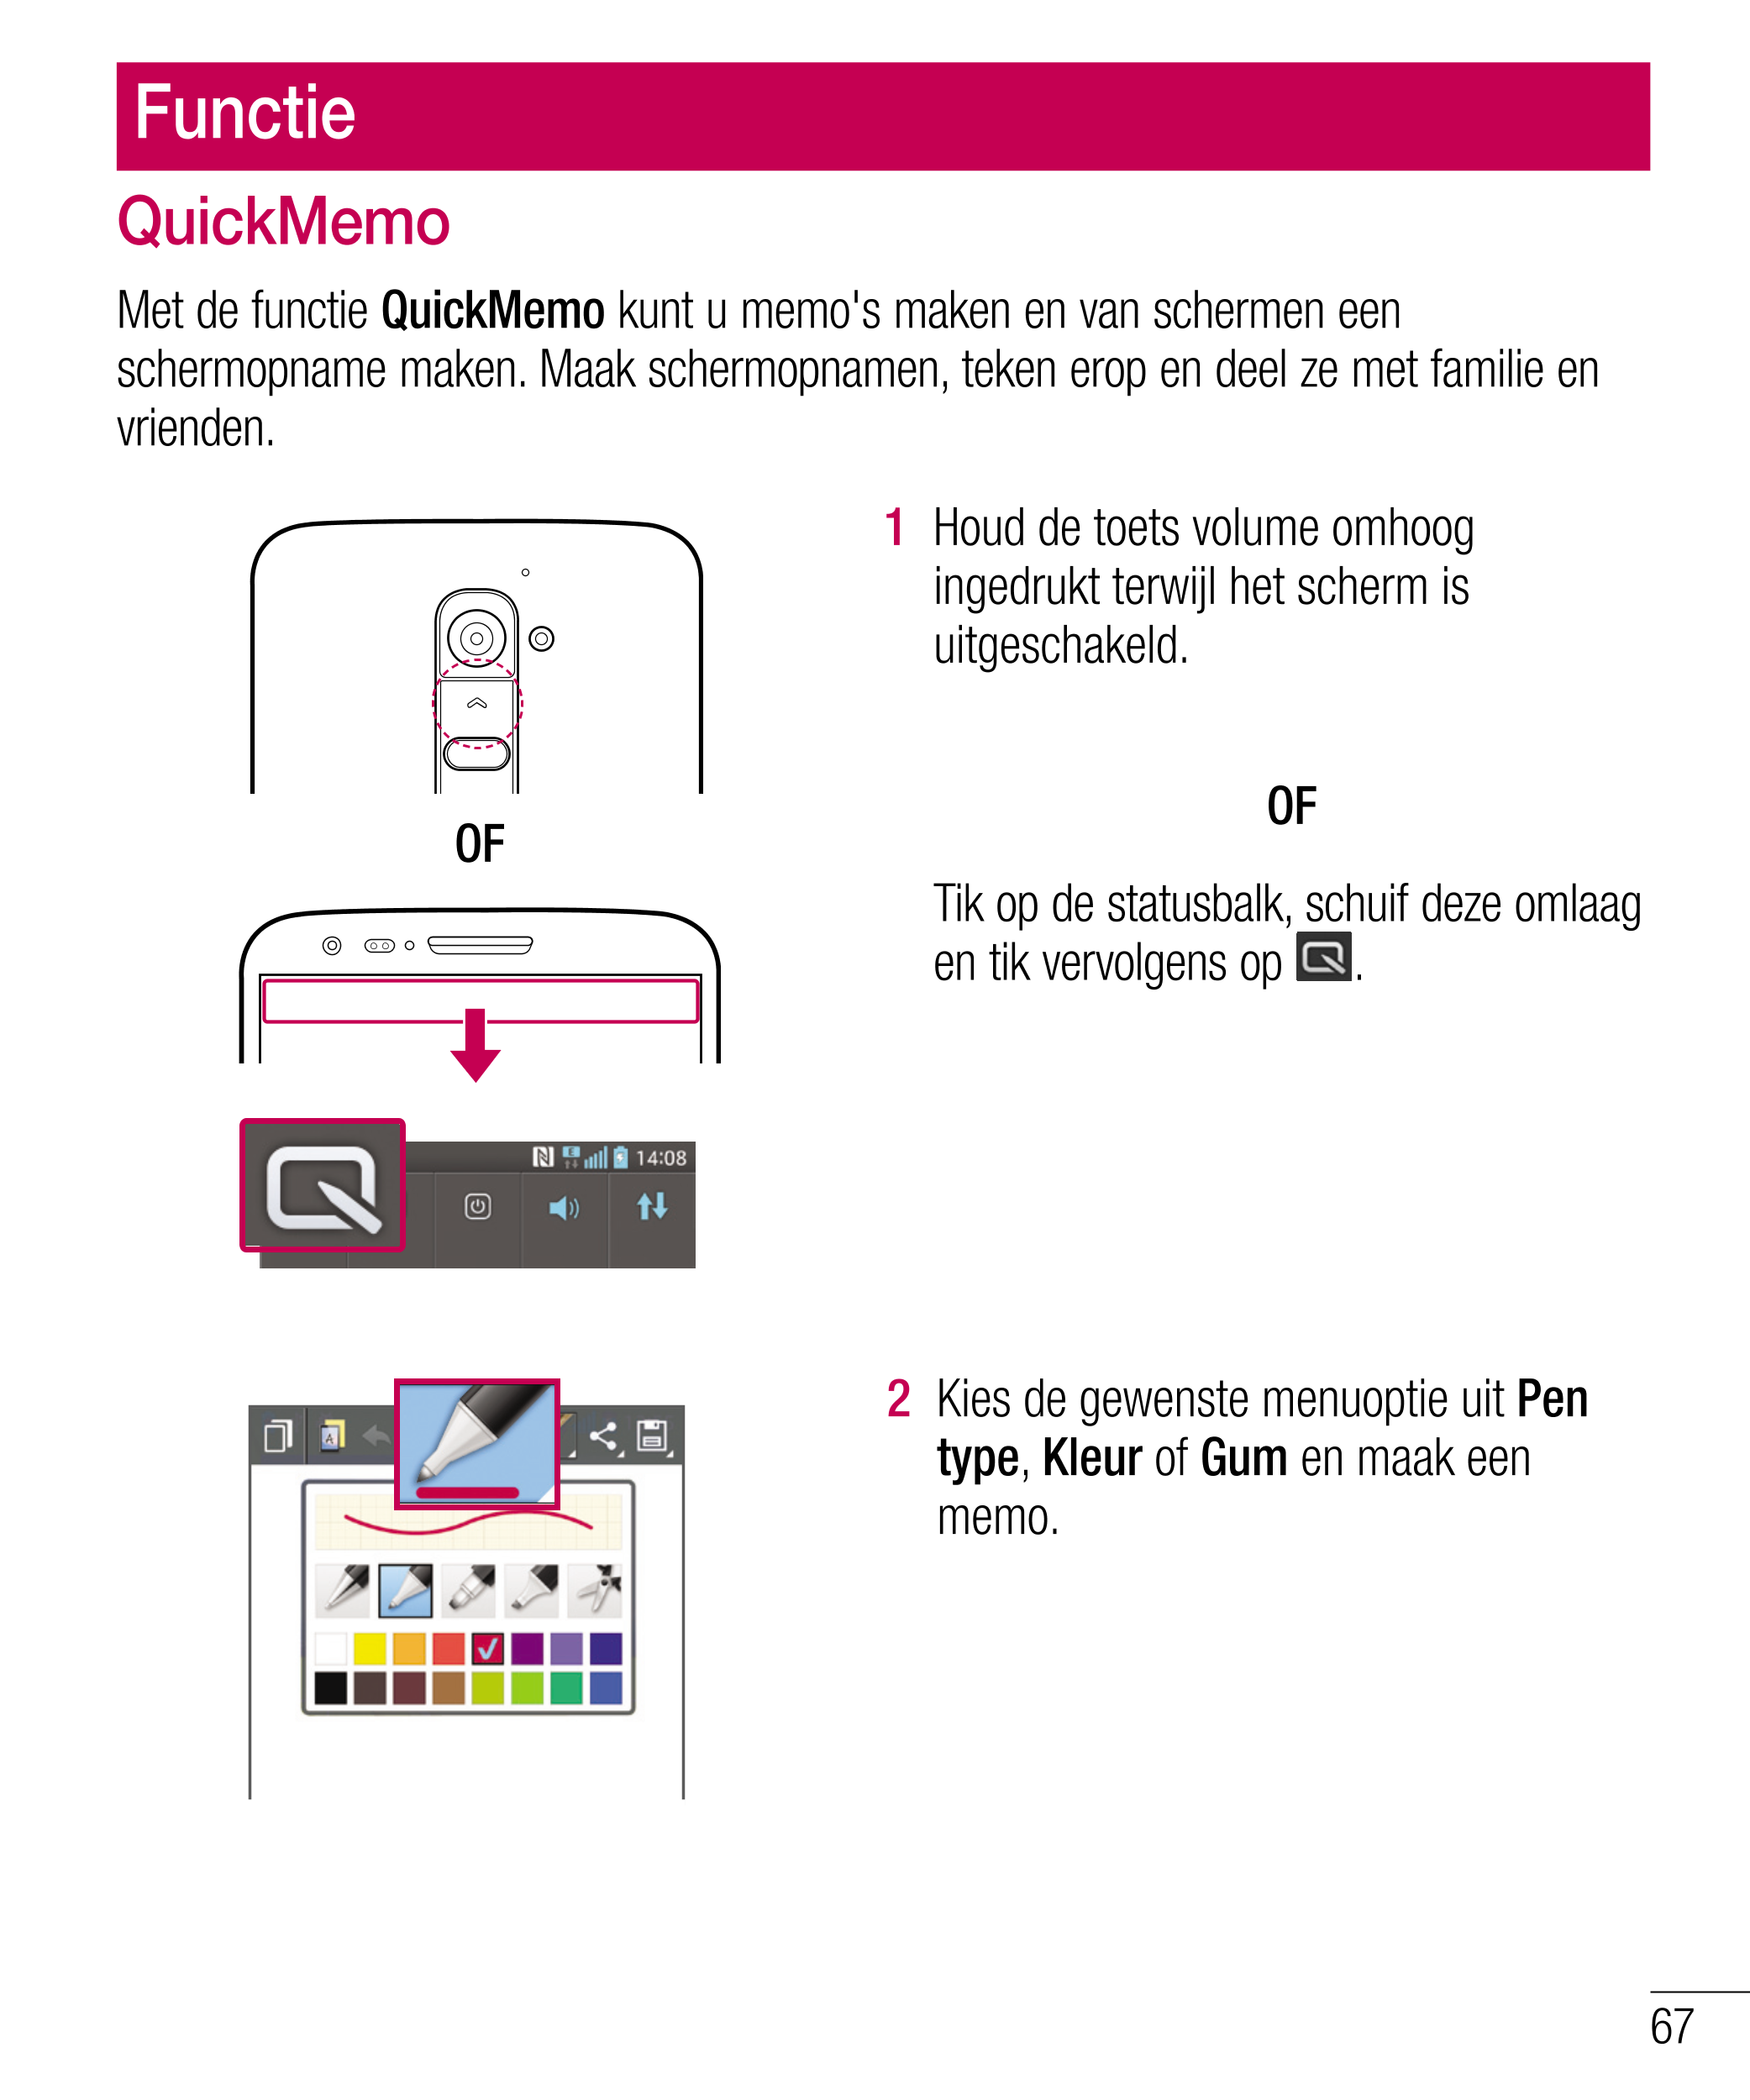 Functie
QuickMemo
Met de functie  QuickMemo  kunt u memo's maken en van schermen een 
schermopname maken. Maak schermopnamen, te